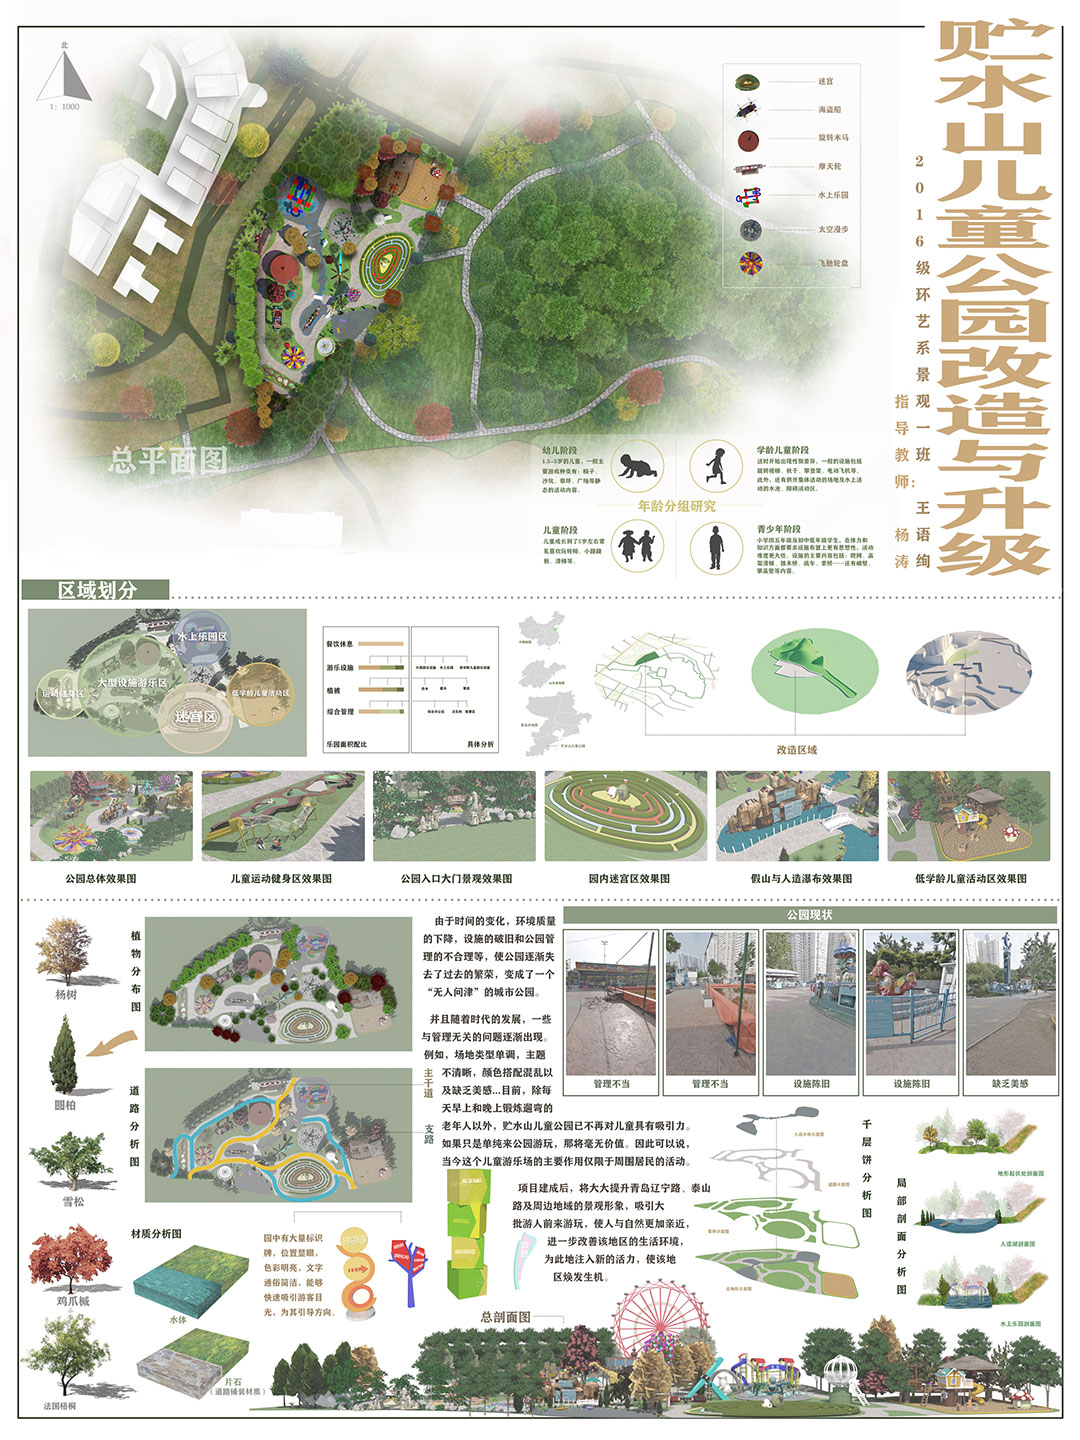 青岛大学 | 景观设计 | 《贮水山儿童公园的改造与升级》创作者：王语绚  指导老师：杨涛